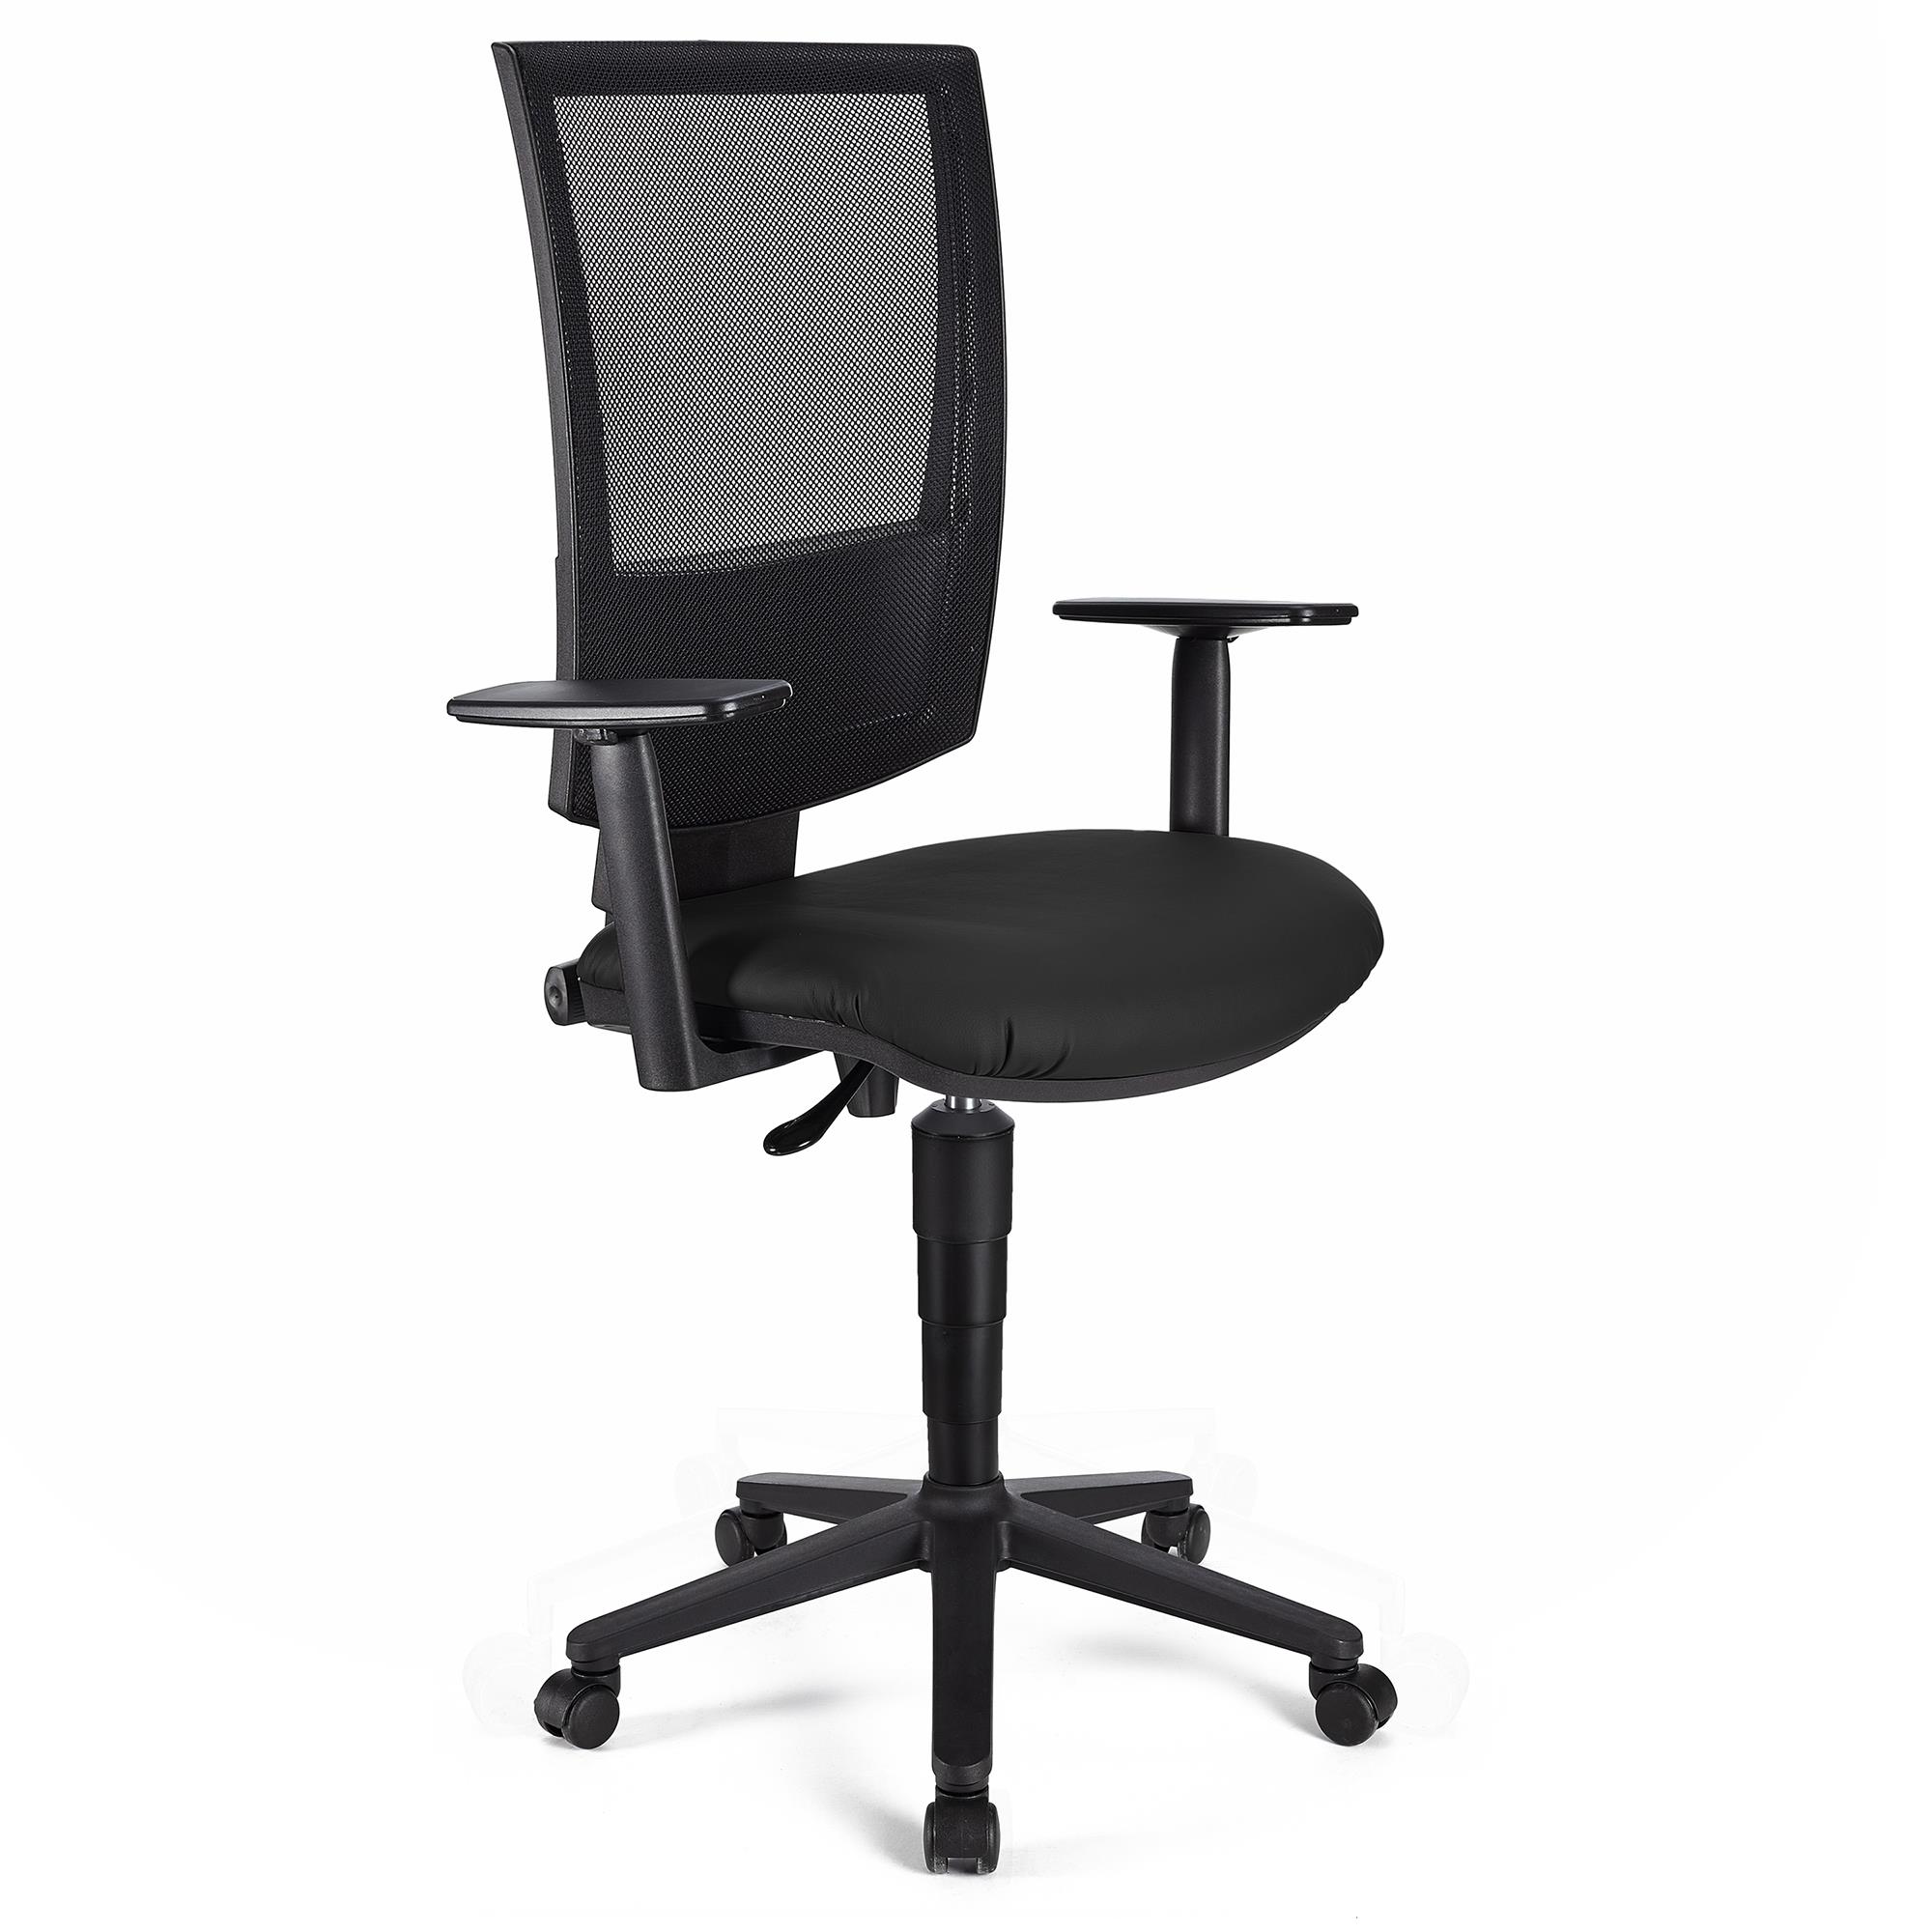 Bürostuhl PANDORA PLUS LEDER mit verstellbaren Armlehnen, Rückenlehne mit Netzbezug, dicke Polsterung, Farbe Schwarz